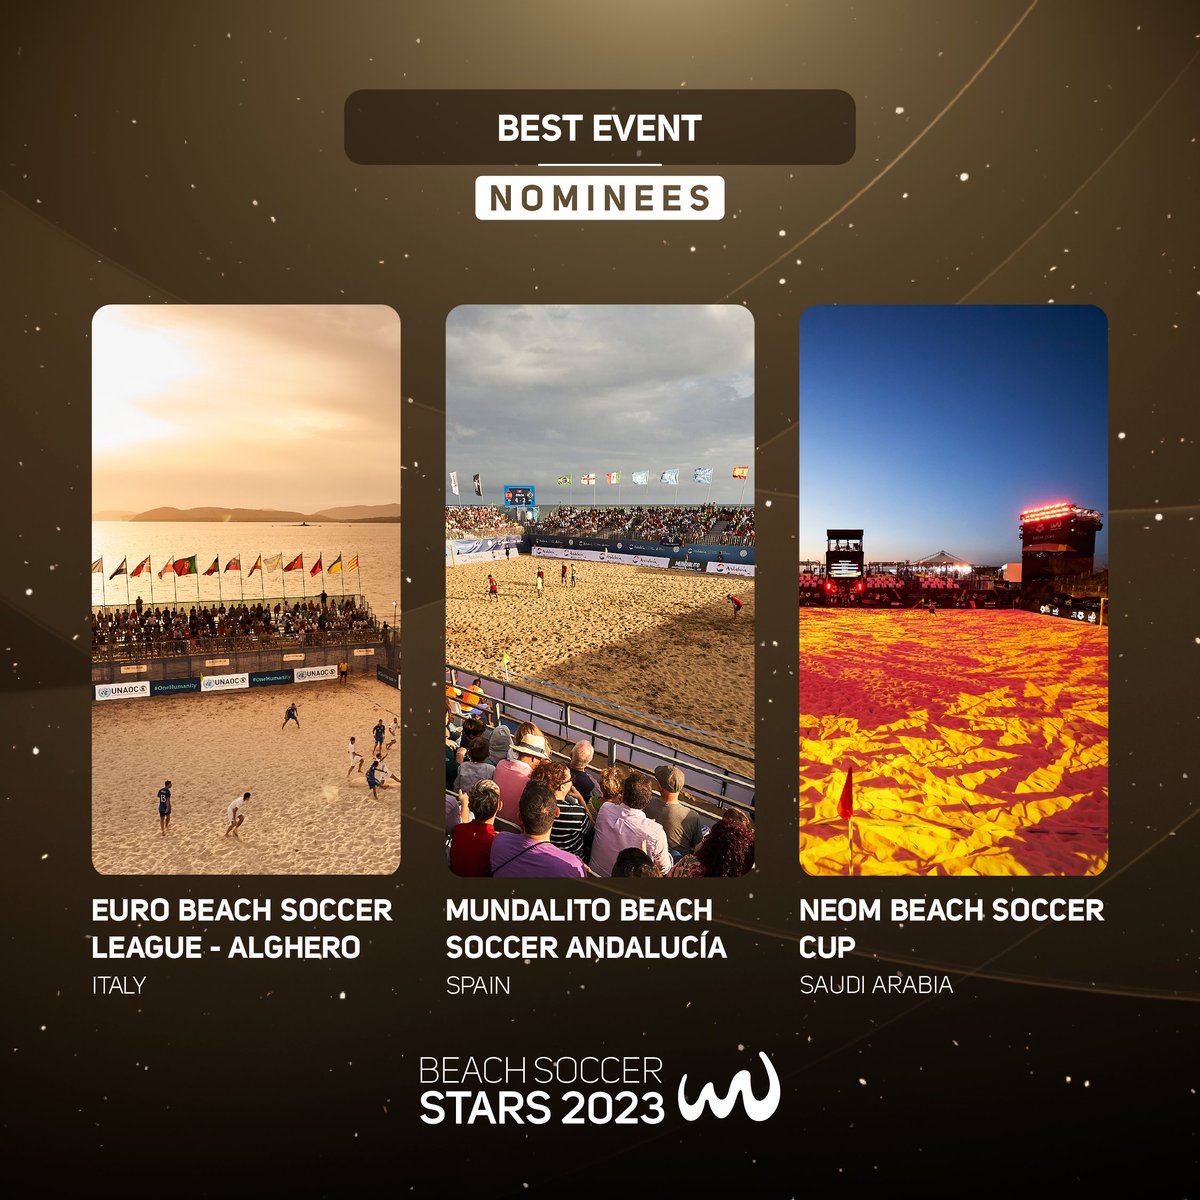 ✨ #BeachSoccerStars - Best Event Nominees: 🏆𝐄𝐮𝐫𝐨 𝐁𝐞𝐚𝐜𝐡 𝐒𝐨𝐜𝐜𝐞𝐫 𝐋𝐞𝐚𝐠𝐮𝐞 𝐀𝐥𝐠𝐡𝐞𝐫𝐨 𝟐𝟎𝟐𝟑 🇮🇹 🏆𝐌𝐮𝐧𝐝𝐢𝐚𝐥𝐢𝐭𝐨 𝐁𝐞𝐚𝐜𝐡 𝐒𝐨𝐜𝐜𝐞𝐫 𝐀𝐧𝐝𝐚𝐥𝐮𝐜í𝐚 𝟐𝟎𝟐𝟑 🇪🇸 🏆𝐍𝐄𝐎𝐌 𝐁𝐞𝐚𝐜𝐡 𝐒𝐨𝐜𝐜𝐞𝐫 𝐂𝐮𝐩 𝟐𝟎𝟐𝟑🇸🇦 📣12 February - Dubai🇦🇪